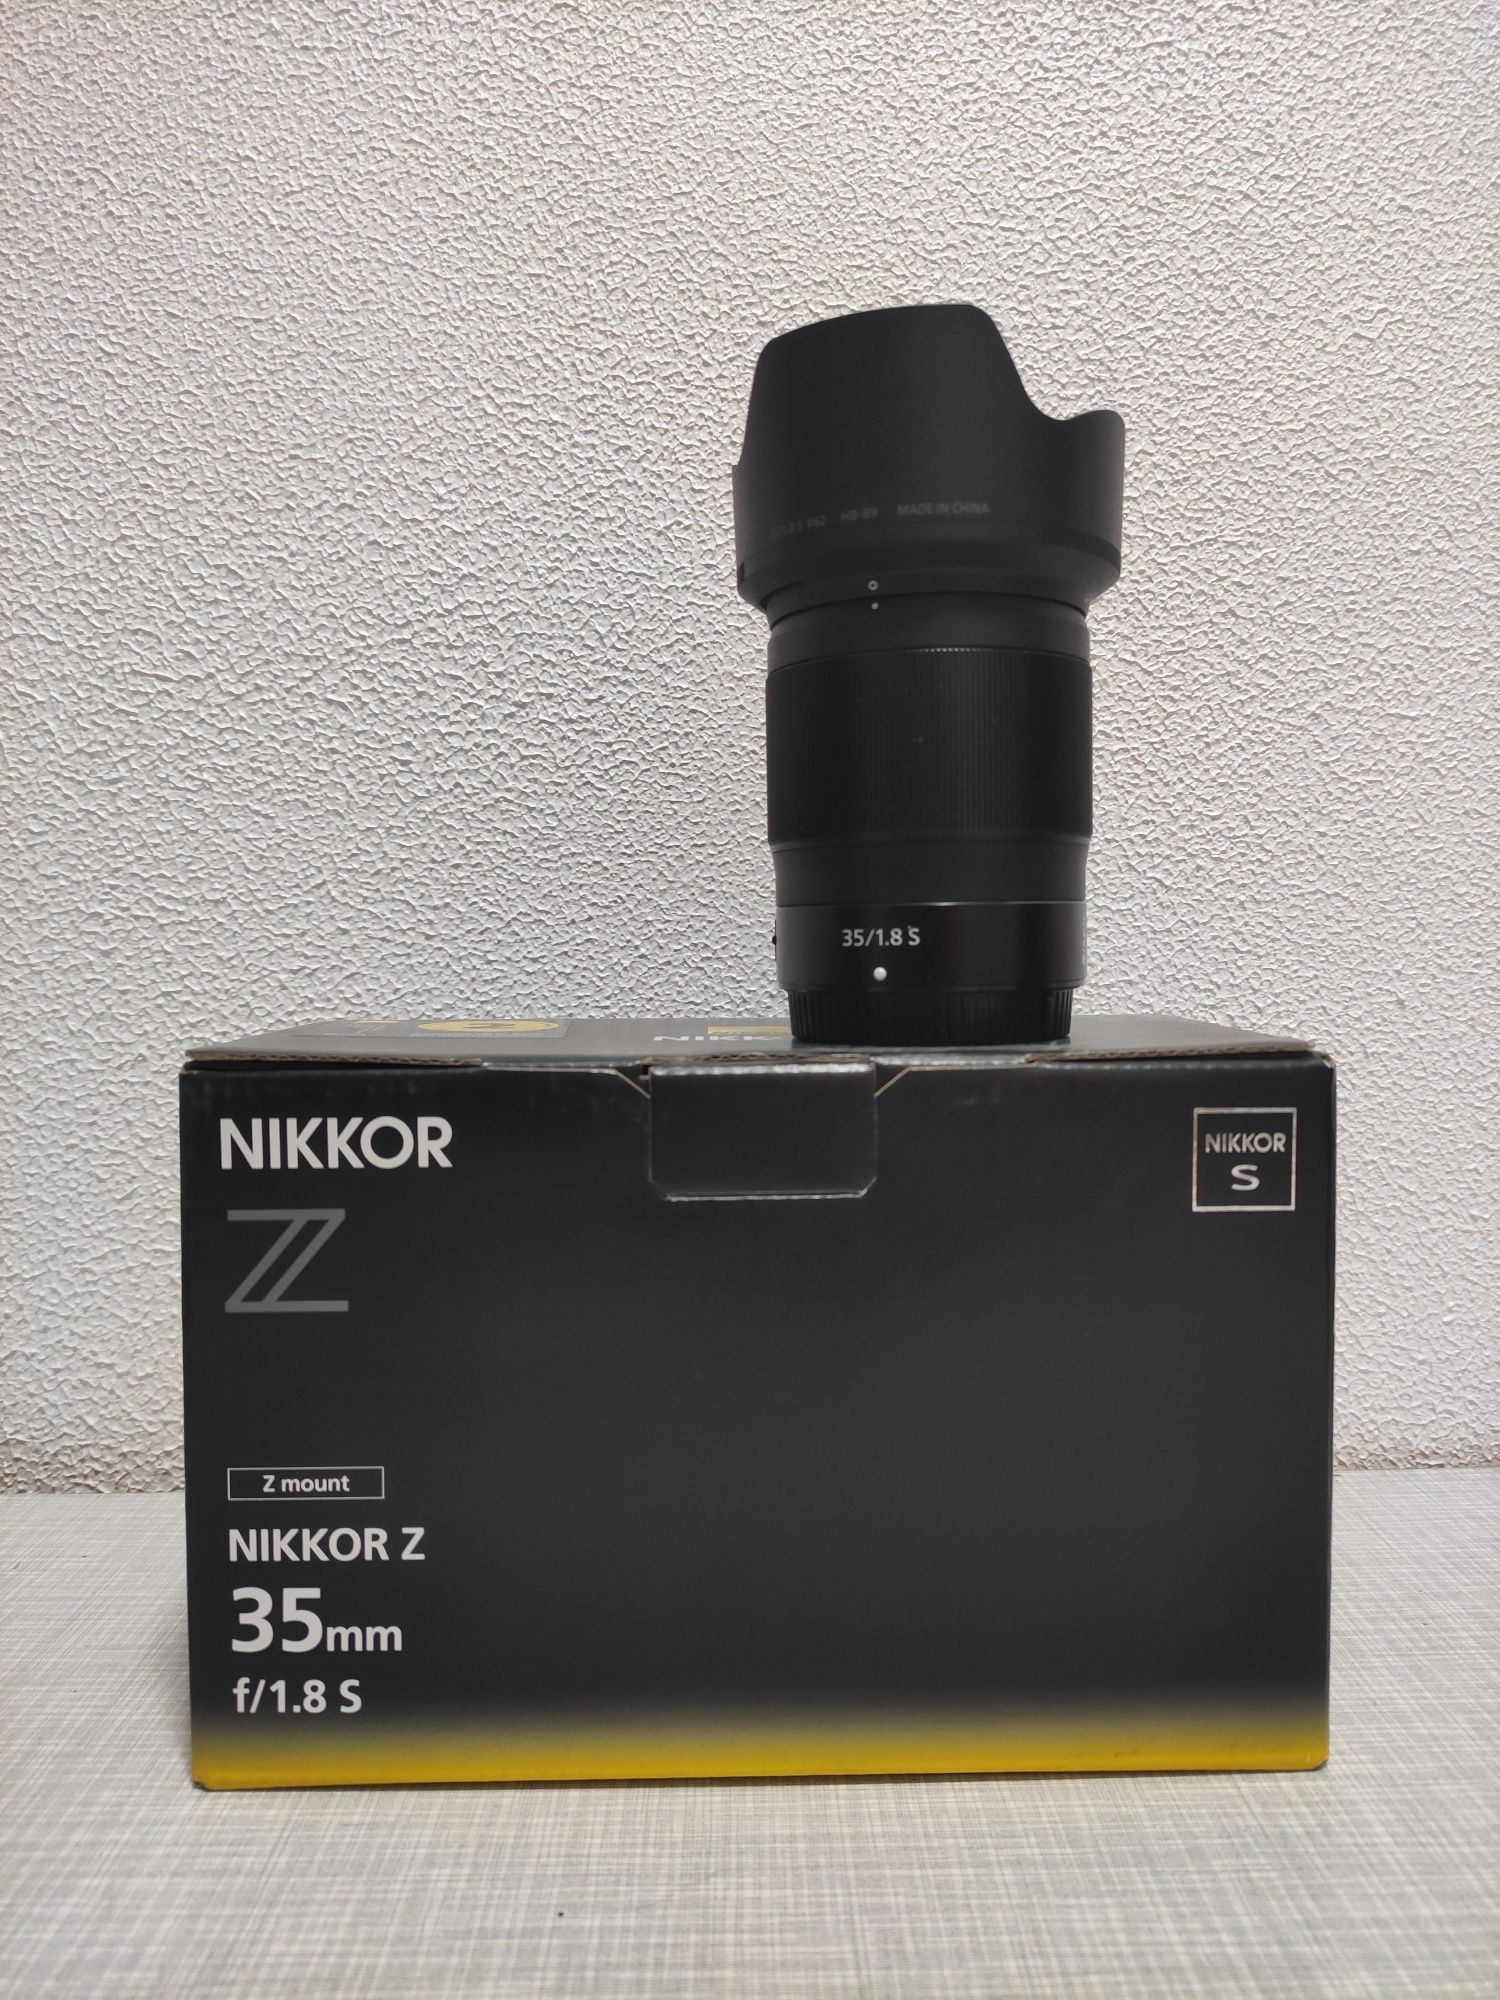 Nikon  35 f1.8 S